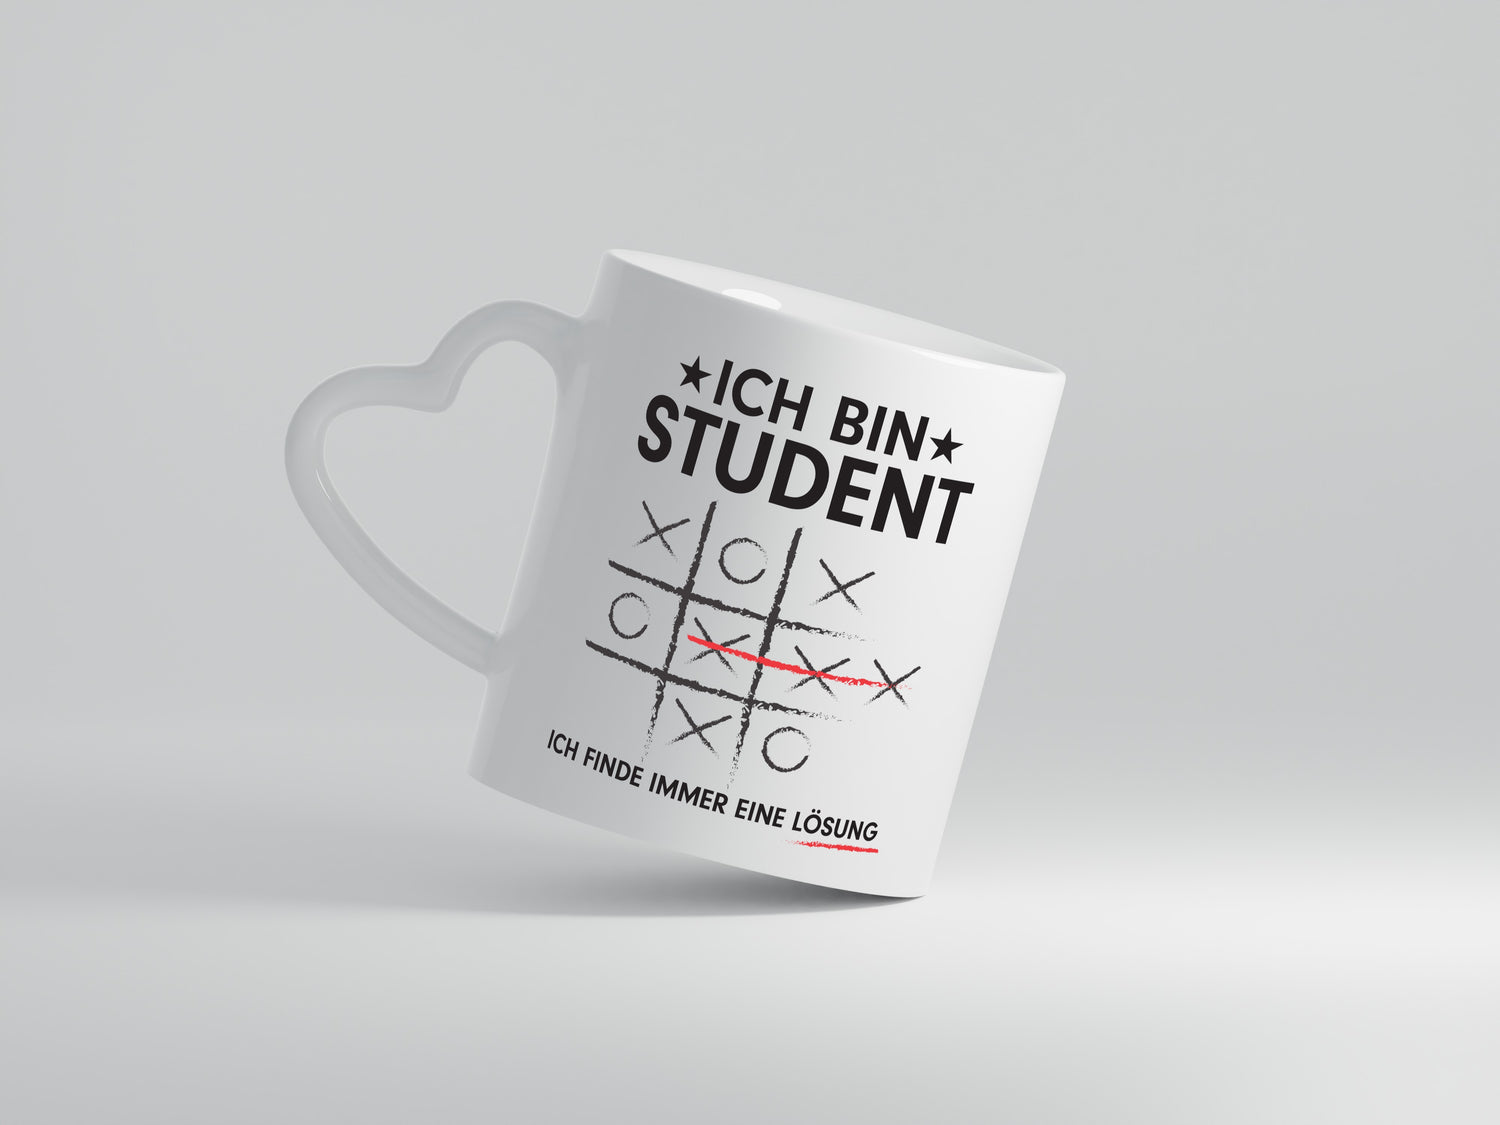 Löse Probleme: Student | Universität | Uni | Studium - Herzhenkel Tasse - Kaffeetasse / Geschenk / Familie